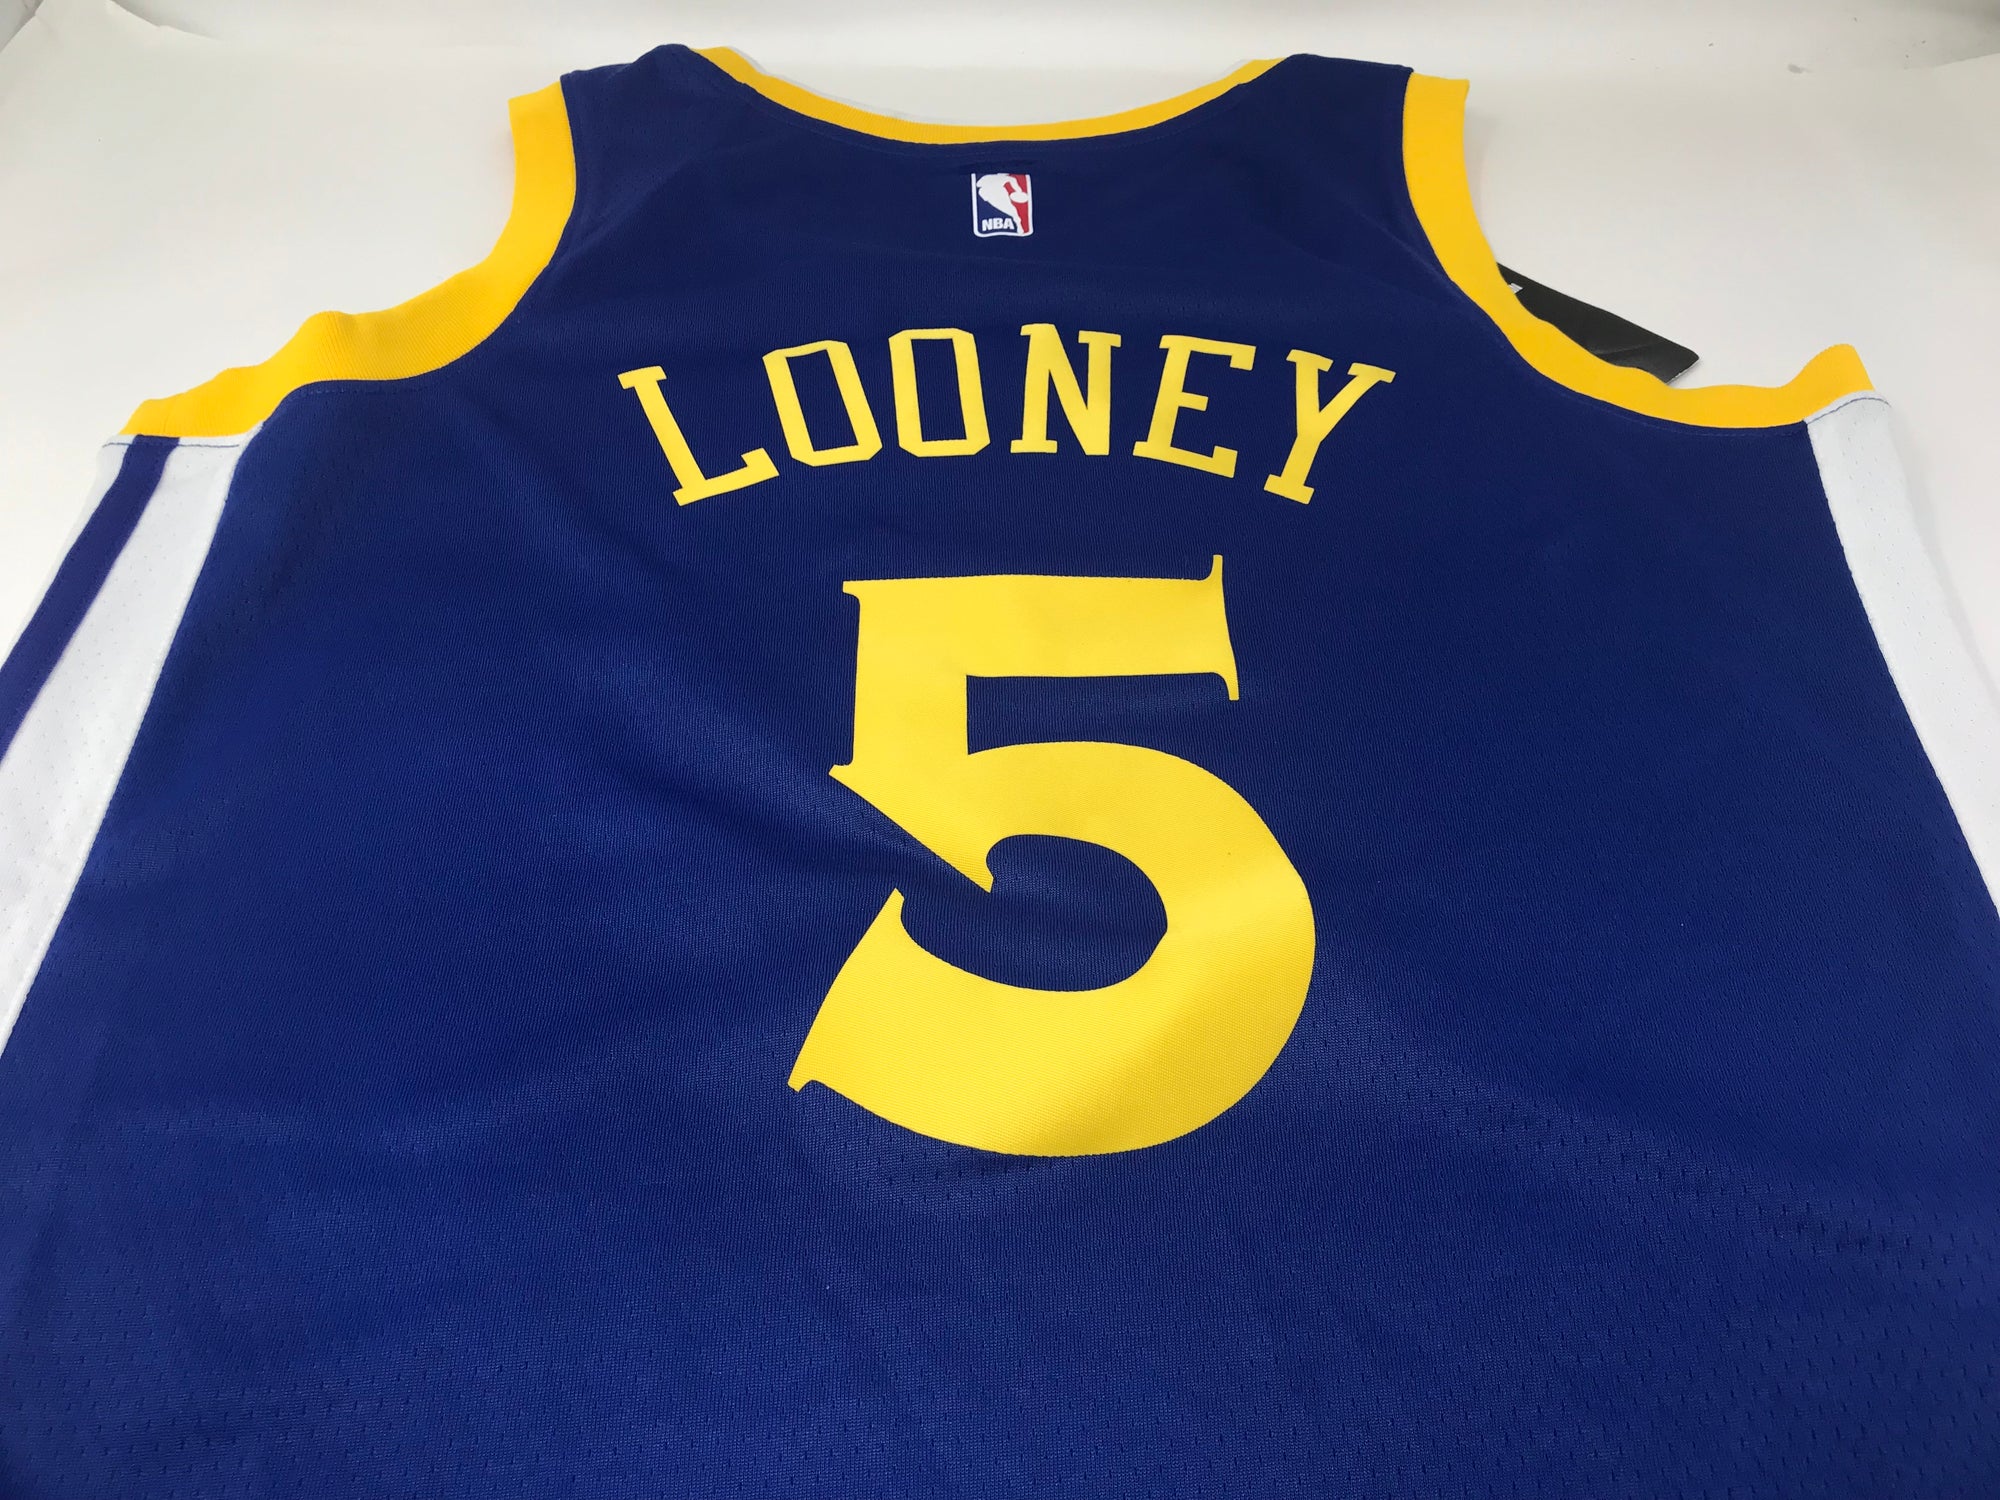 looney warriors jersey